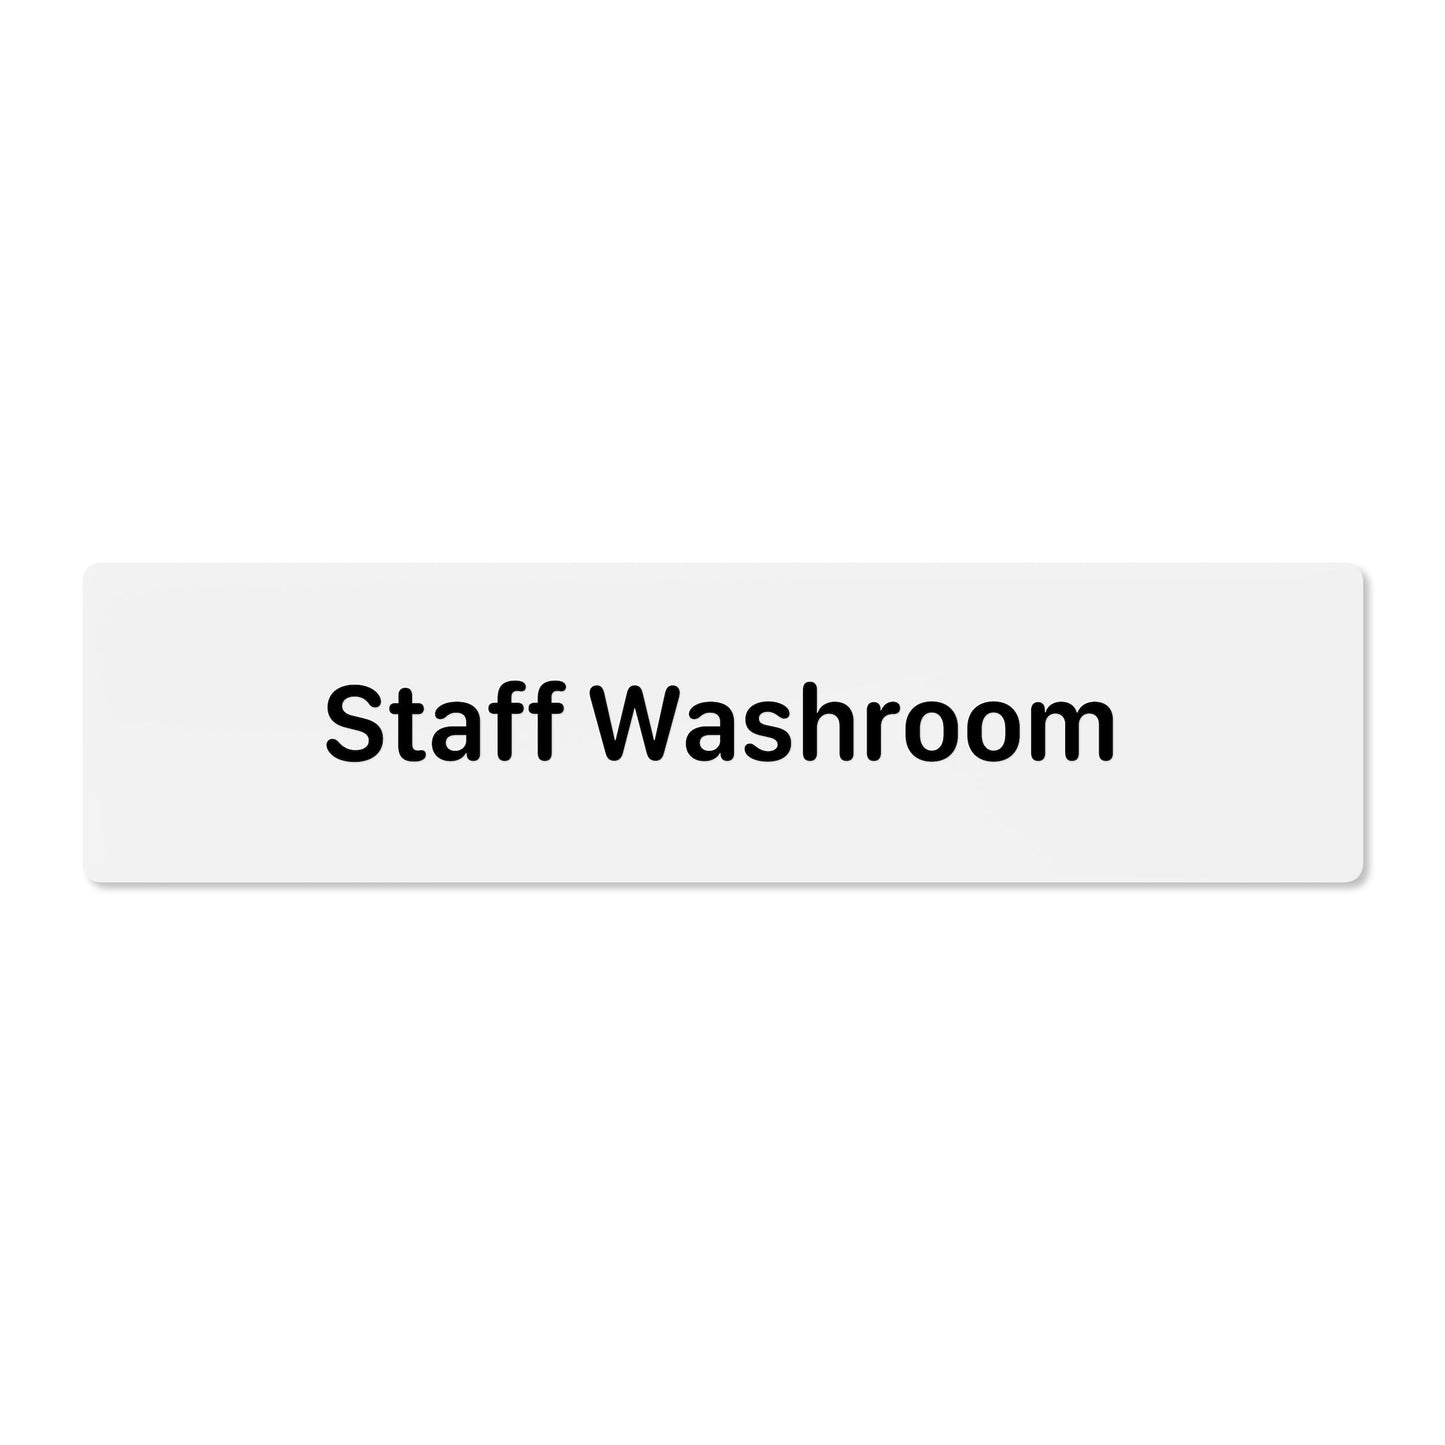 Staff Washroom